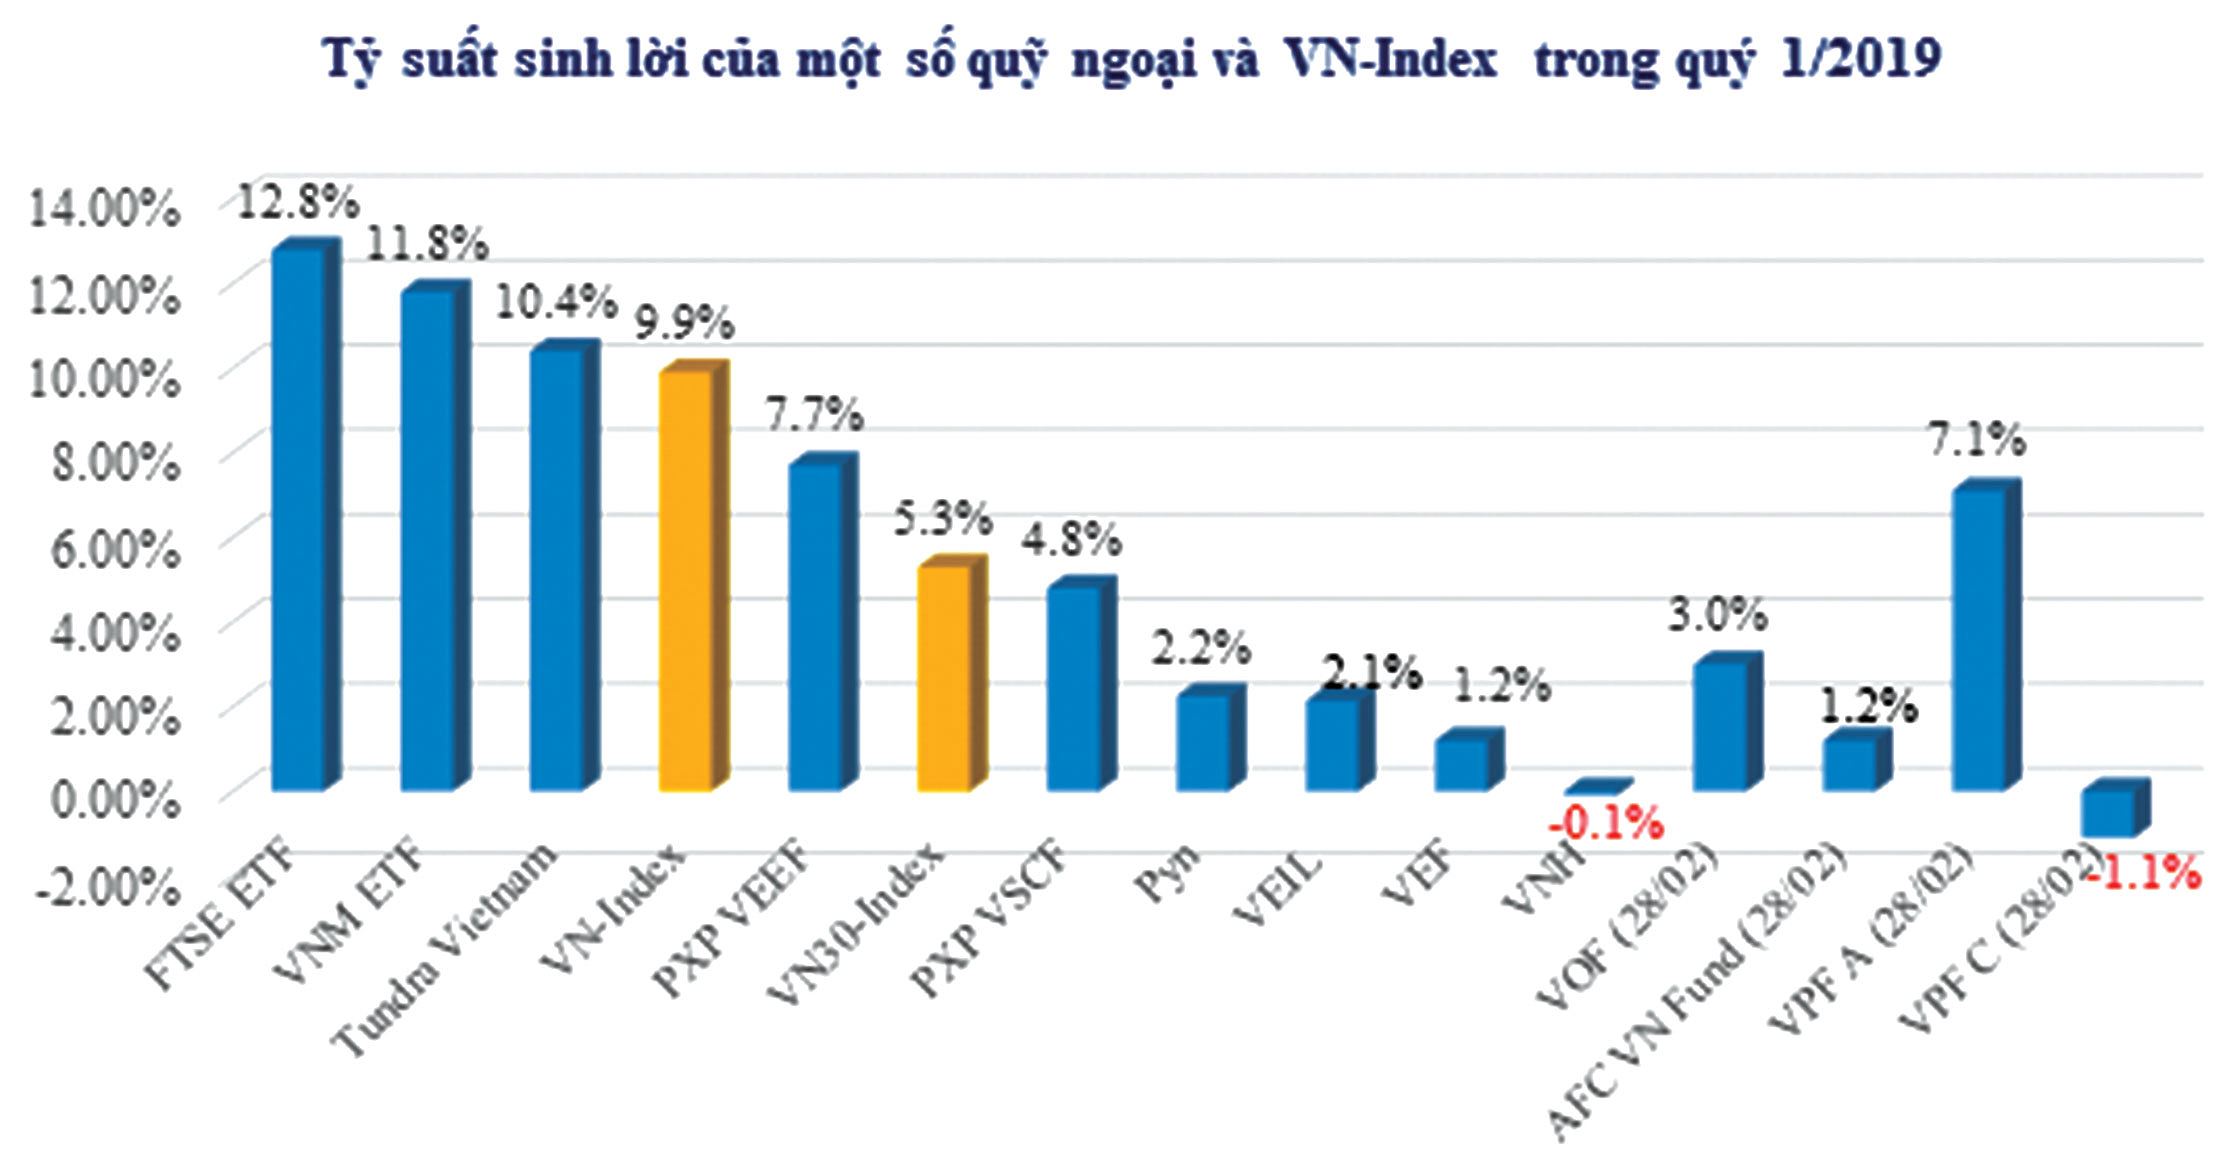 Tỷ suất sinh lời của một số quỹ ngoại và VN-Index trong quý 1/2019